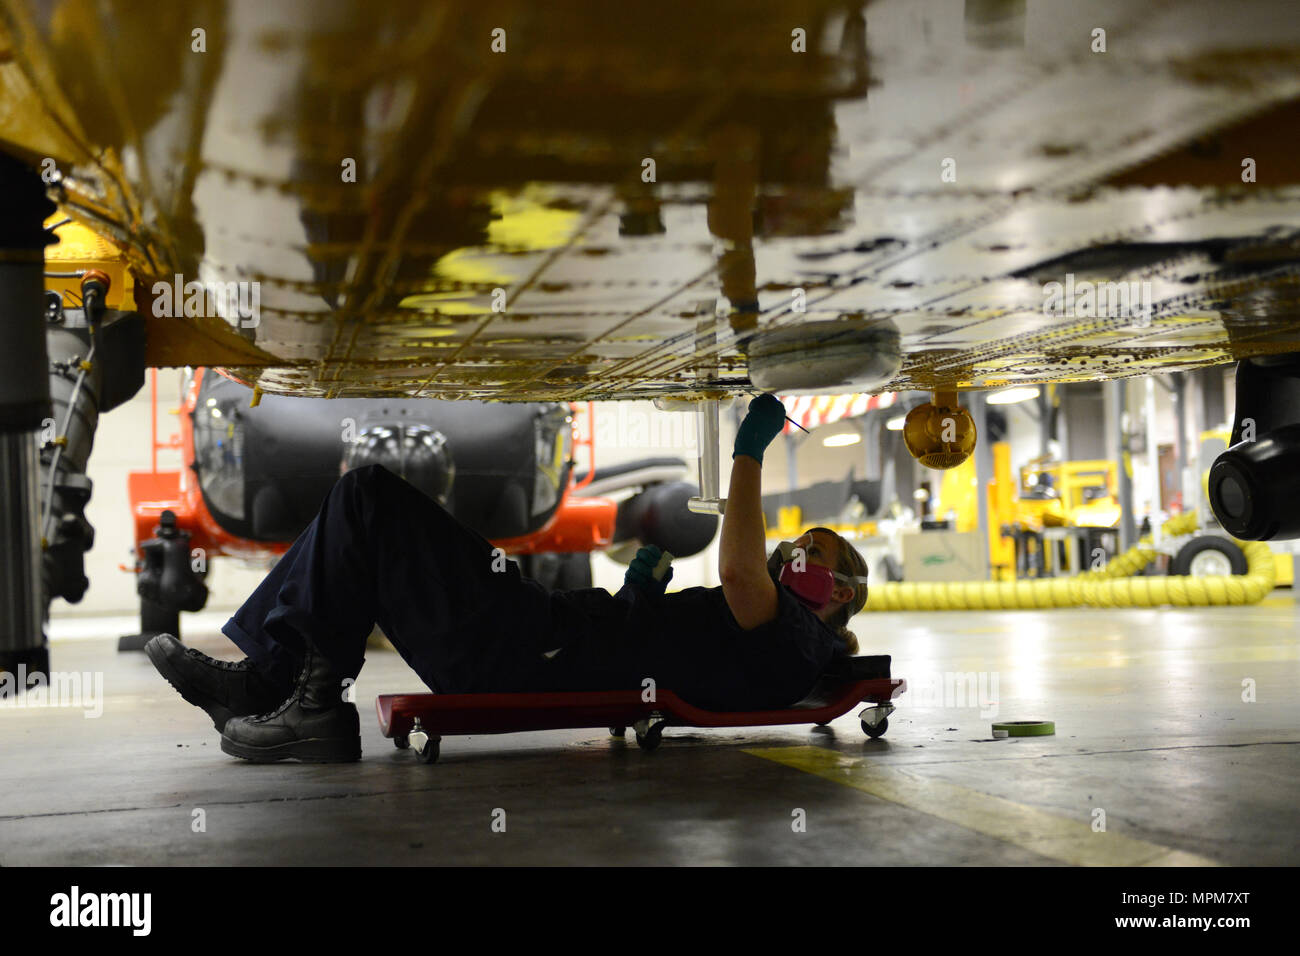 Maître de 3e classe Juliana Harrison, un technicien en électronique d'aviation, effectue l'entretien anti-corrosion sur un hélicoptère Jayhawk MH-60 dans le hangar au secteur de la Garde côtière canadienne dans la rivière Columbia Warrenton, Oregon, Mars 26, 2017. Ce n'est qu'une des nombreuses tâches effectuées pendant cette période de maintenance. U.S. Coast Guard photo de Maître de 1re classe Zac Crawford. Banque D'Images